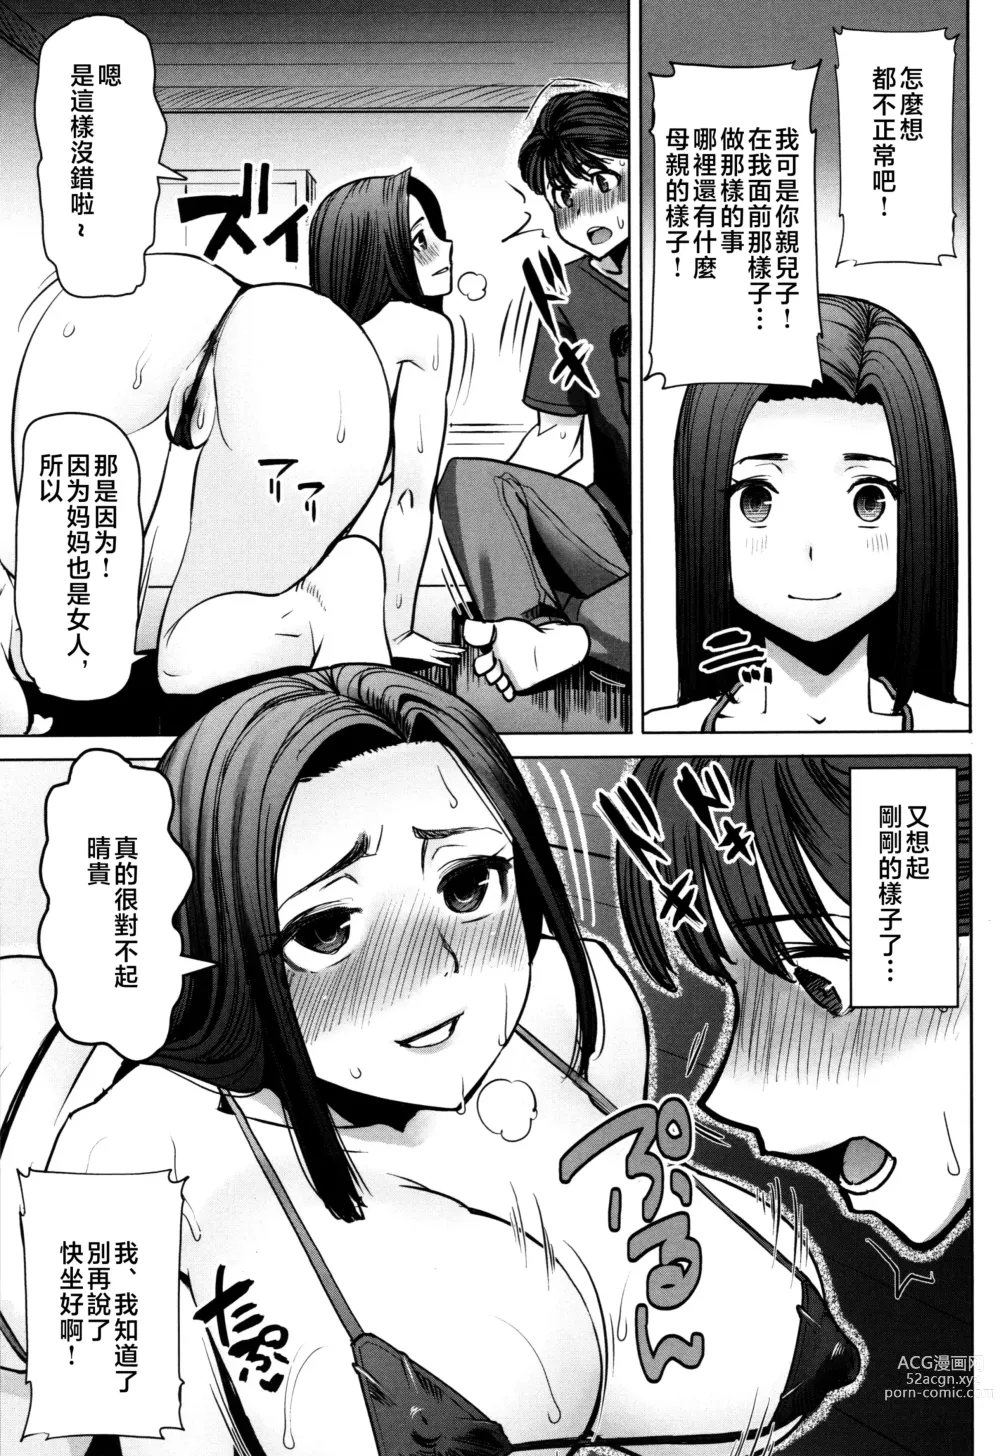 Page 175 of manga Unsweet - Asahina Ikka Netorareta Haha · Tomoko (decensored)